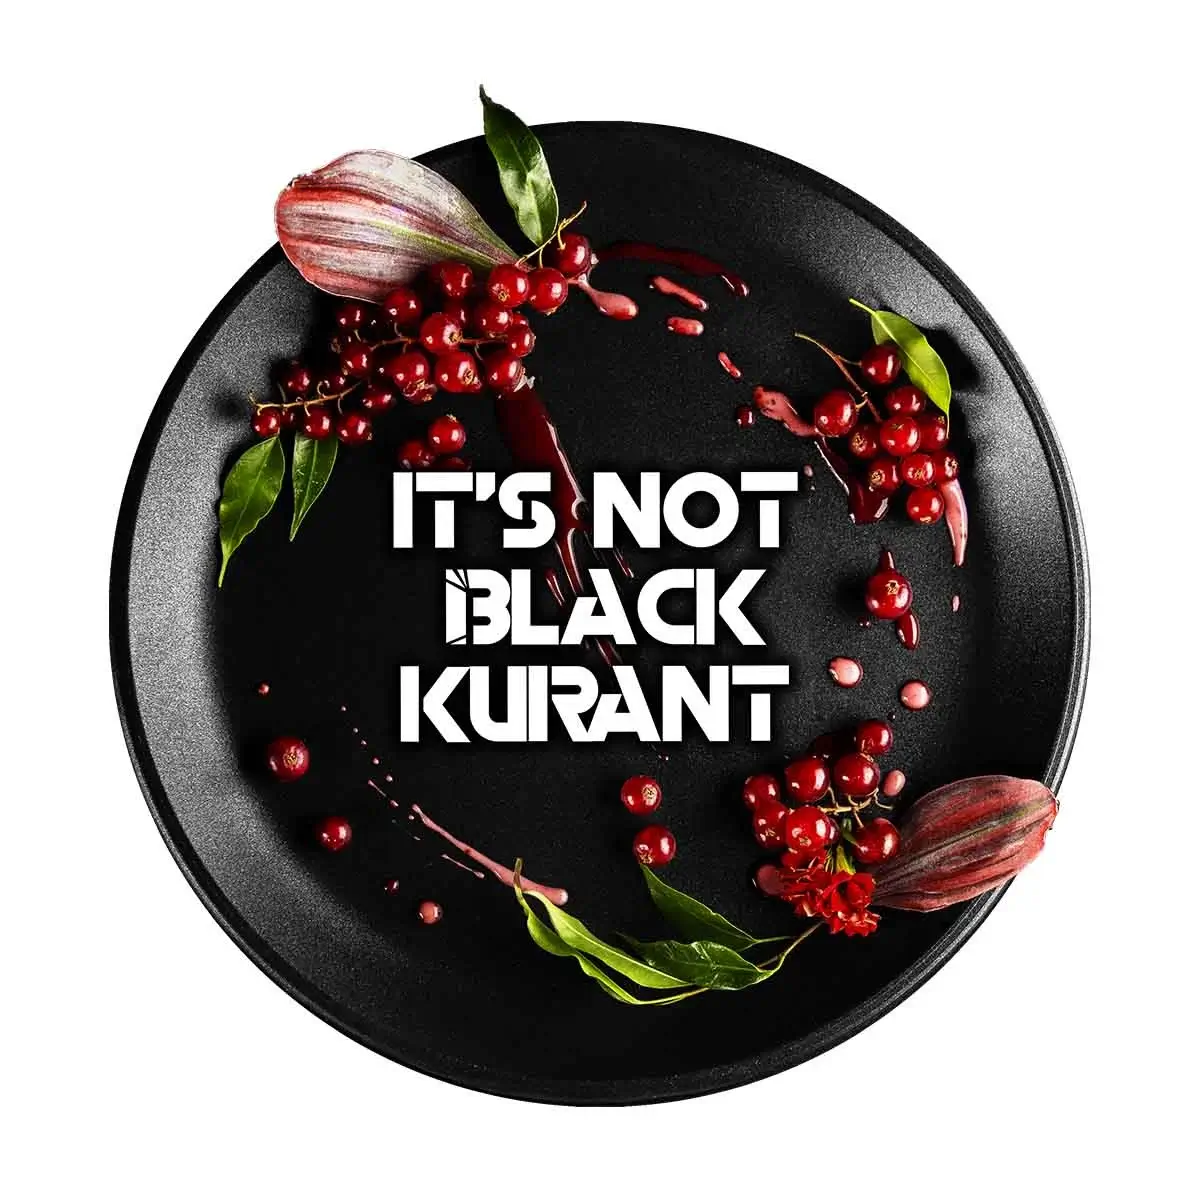 Blackburn Tabak It's not Black Kurrant 25g